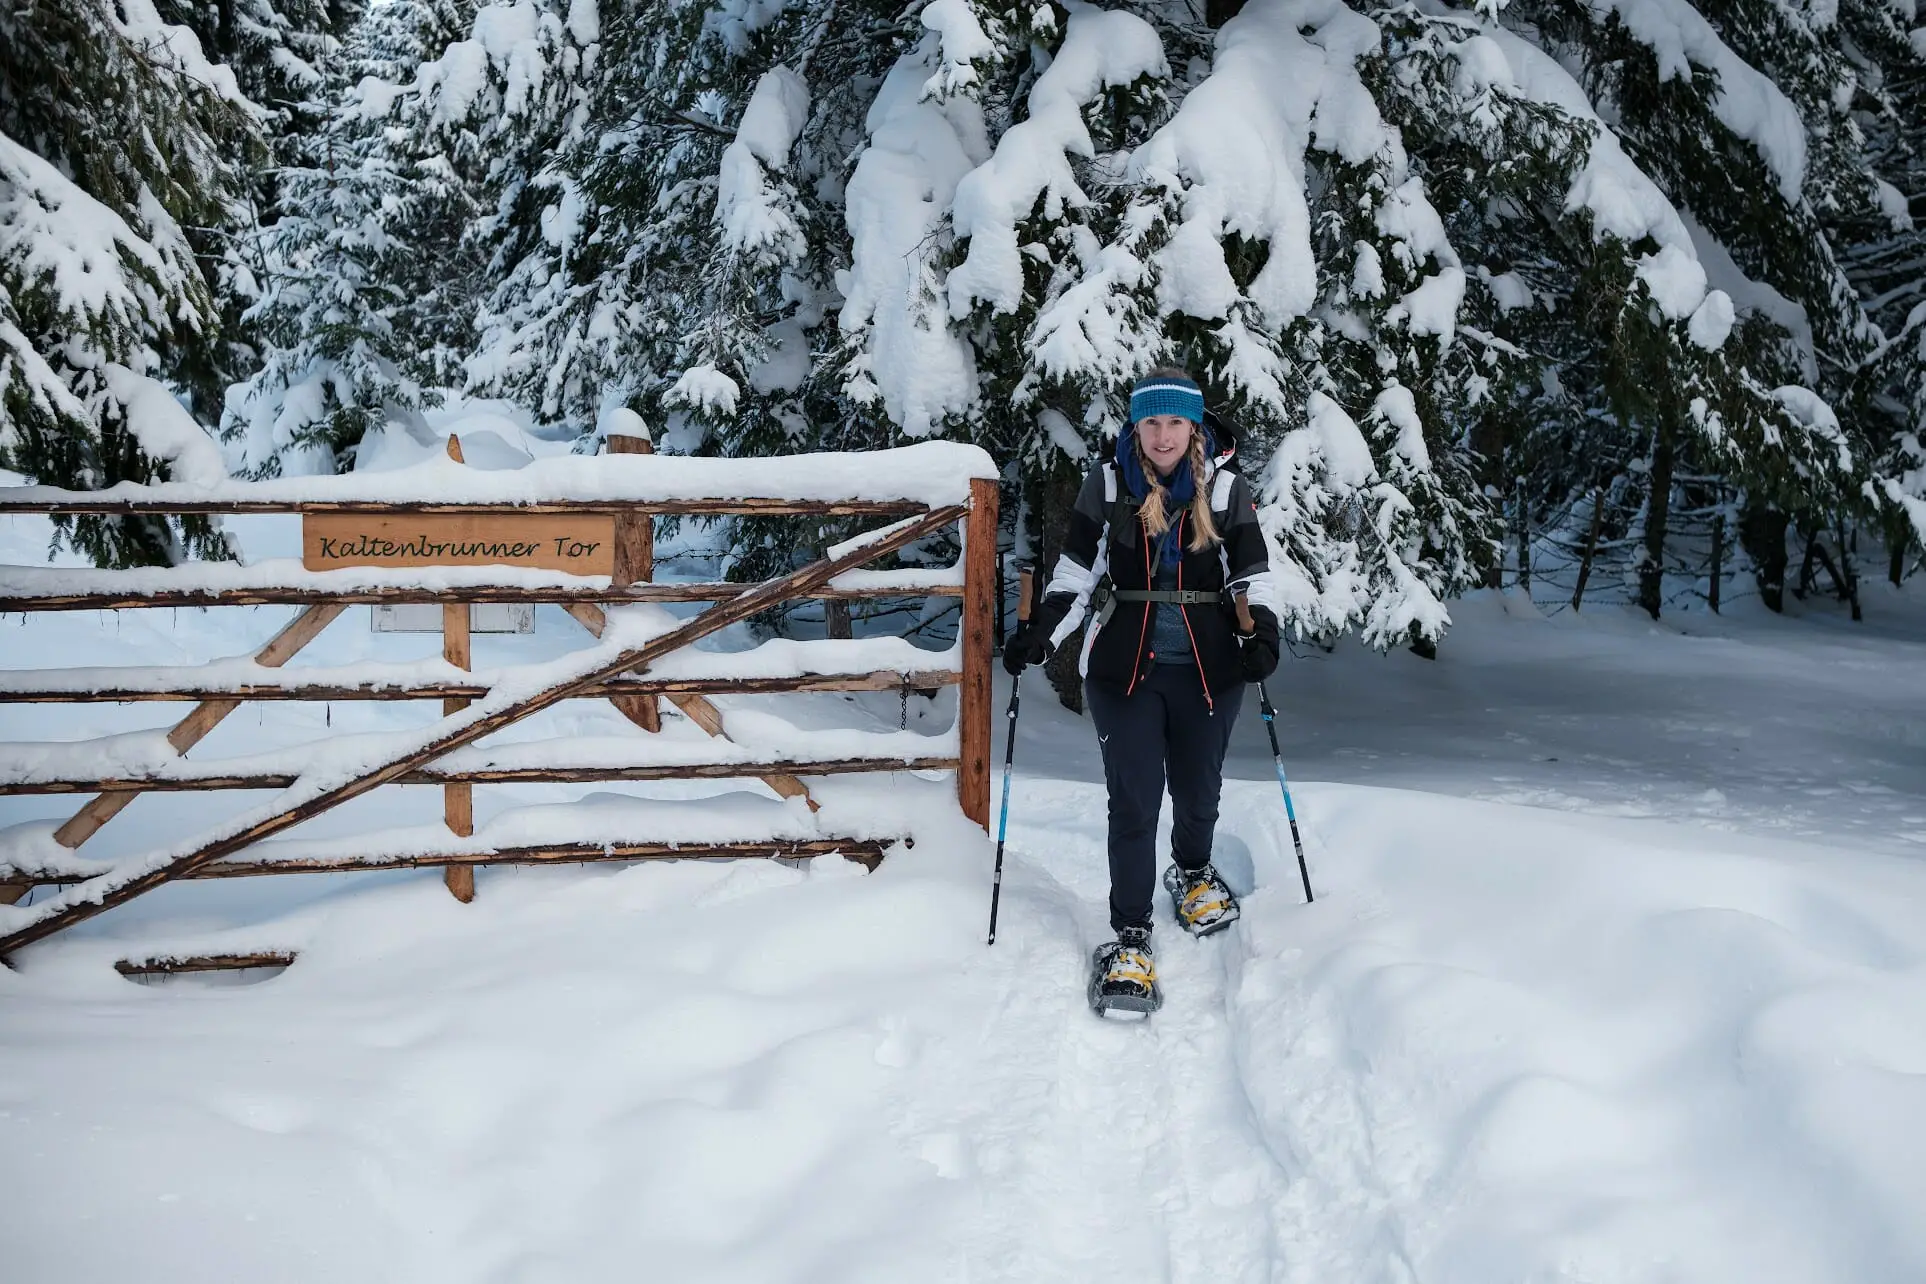 Frau mit Schneeschuhen an einem Gattertor im verschneiten Winterwald